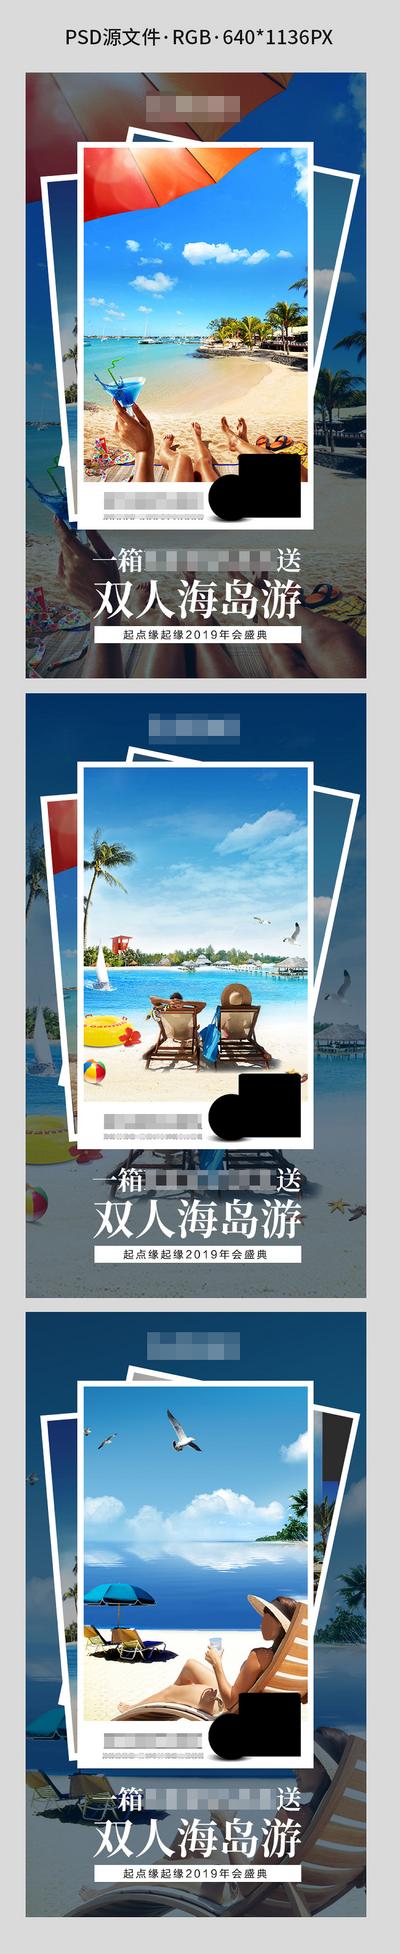 【南门网】海报 旅游 旅行 海边 大海 阳光 沙滩 比基尼 游泳 微信 微商 招商 照片